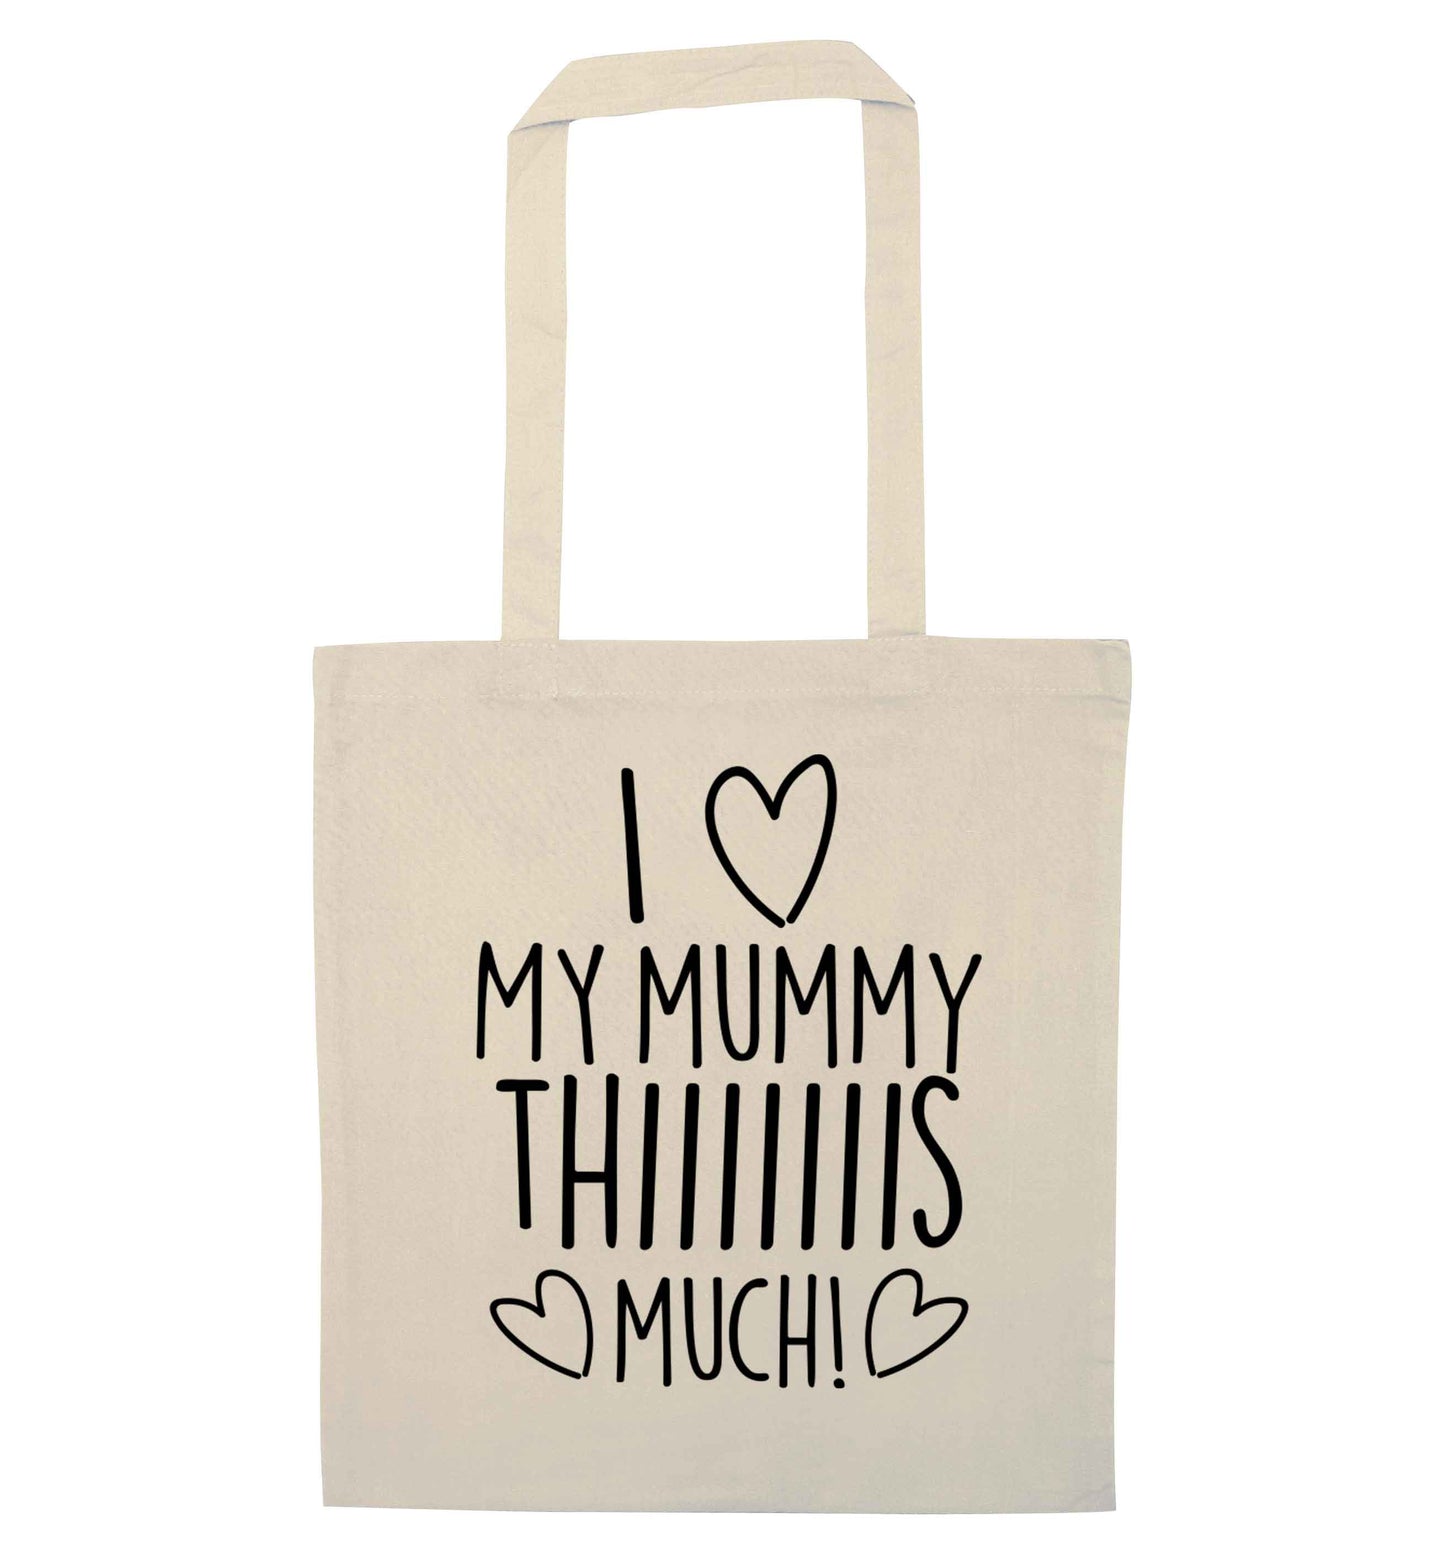 I love my mummy thiiiiis much! natural tote bag